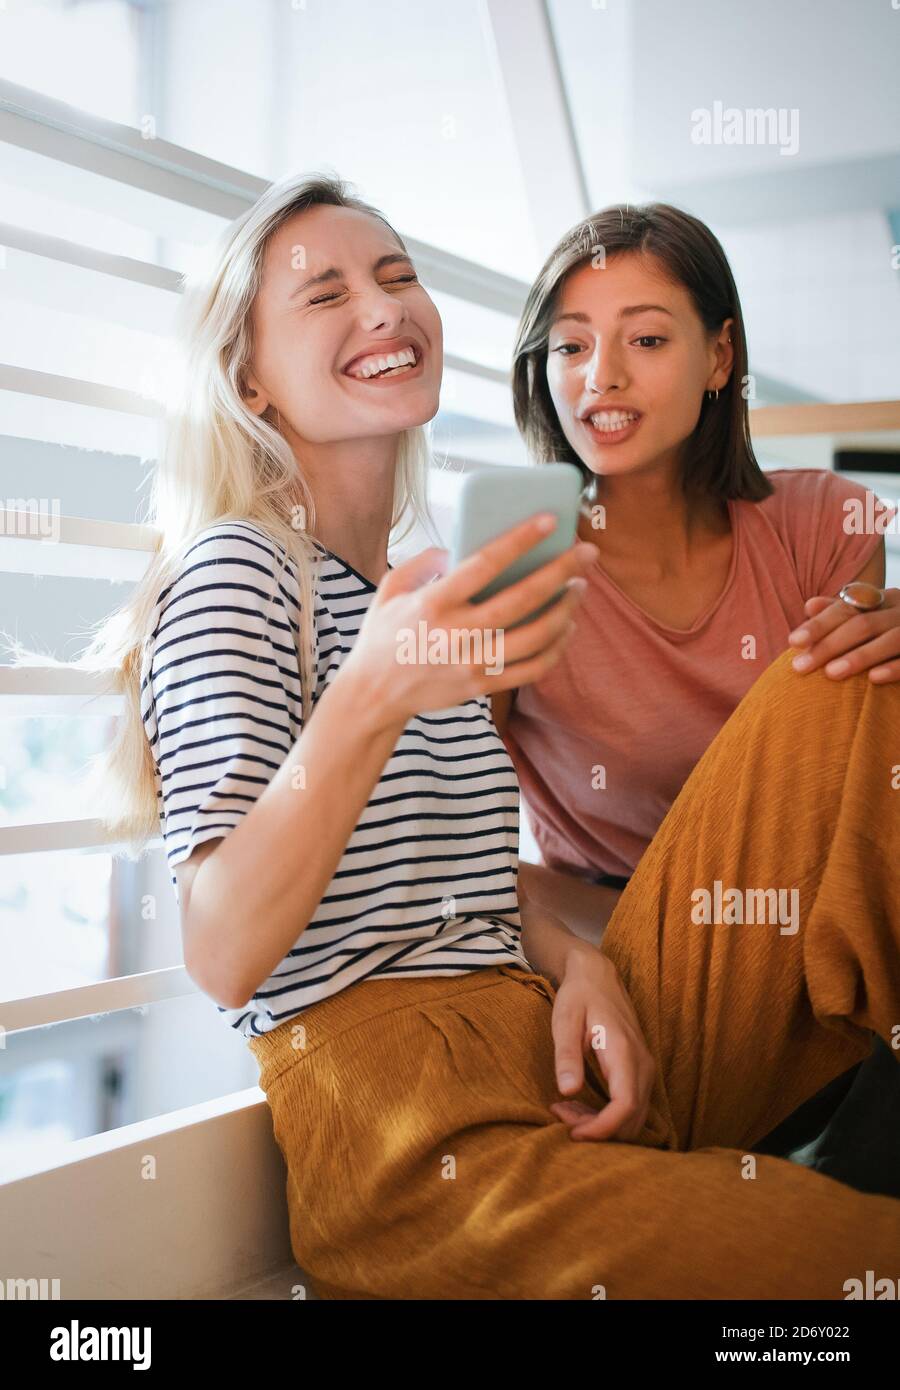 Junge weibliche Freunde reden, lachen und gemeinsam Spaß haben Stockfoto